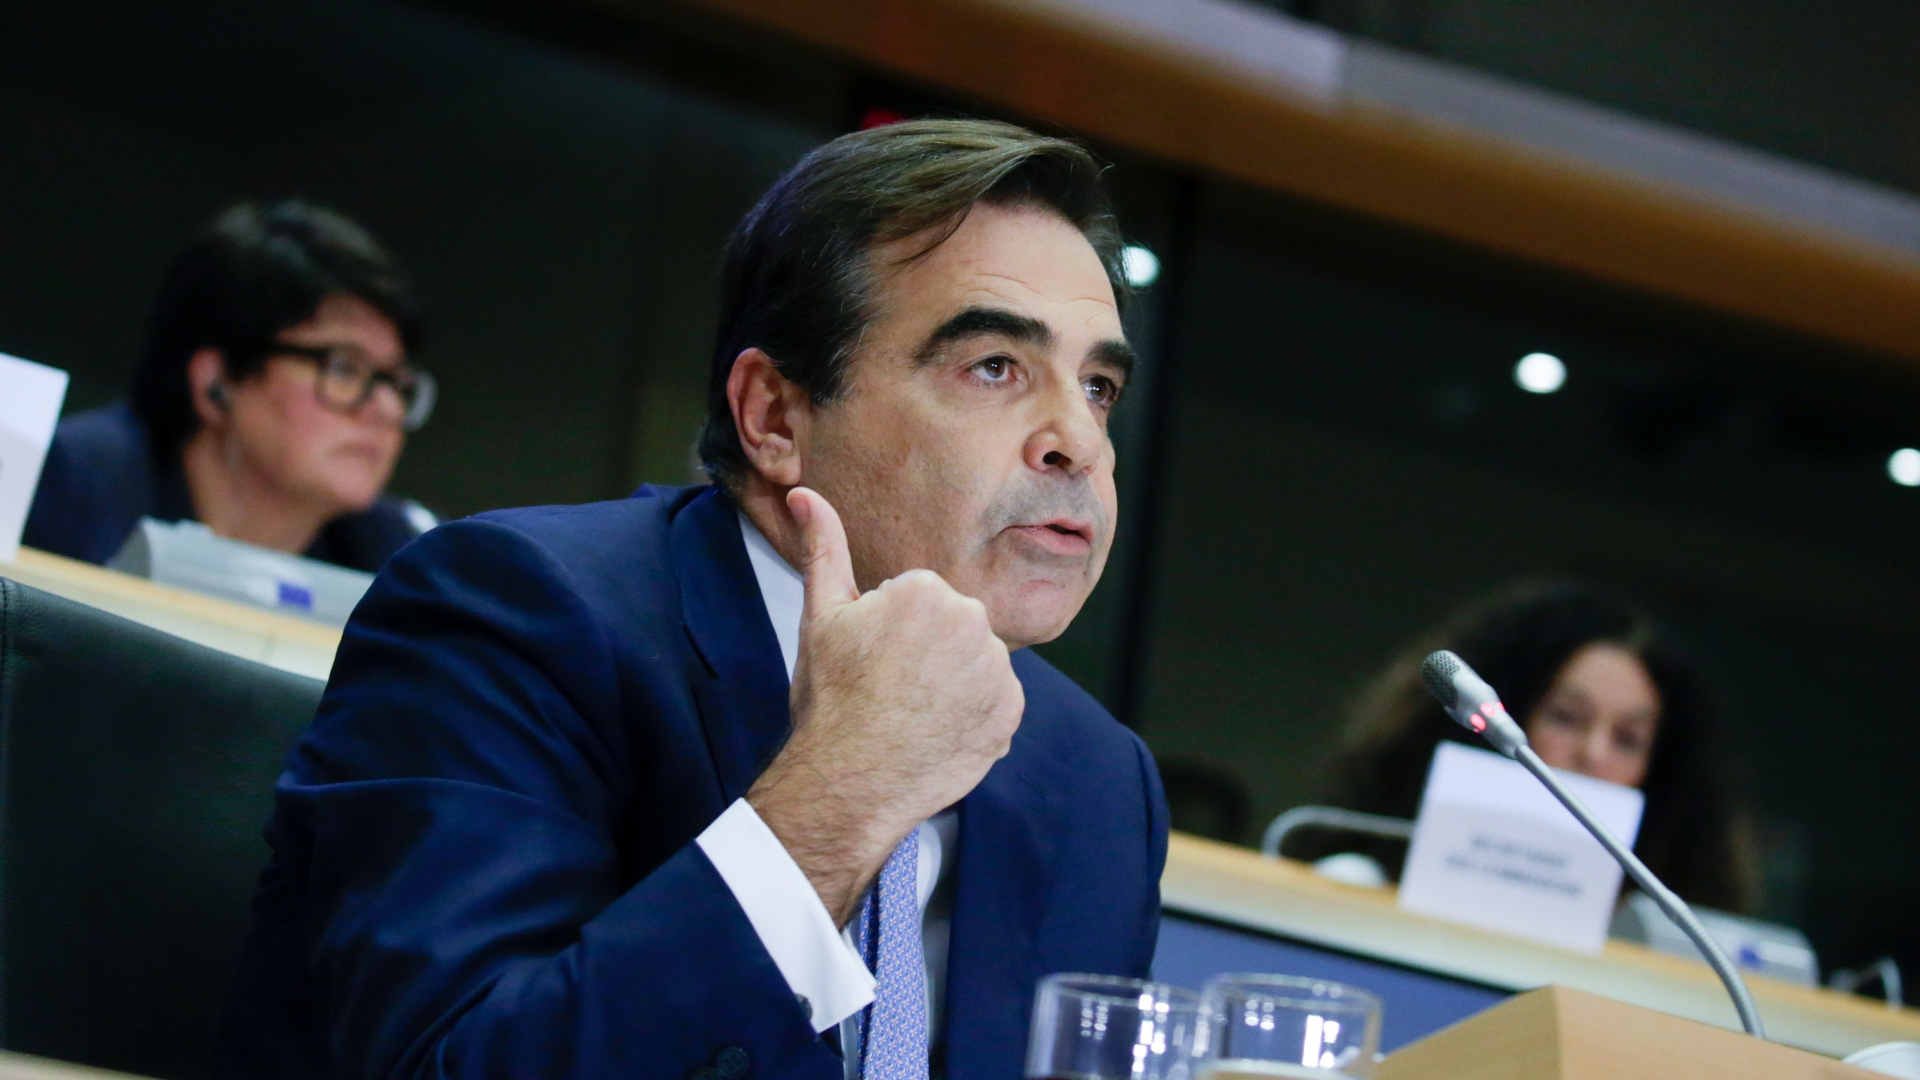 Der designierte EU-Kommissar Margaritis Schinas spricht im Europäischen Parlament.  | AFP